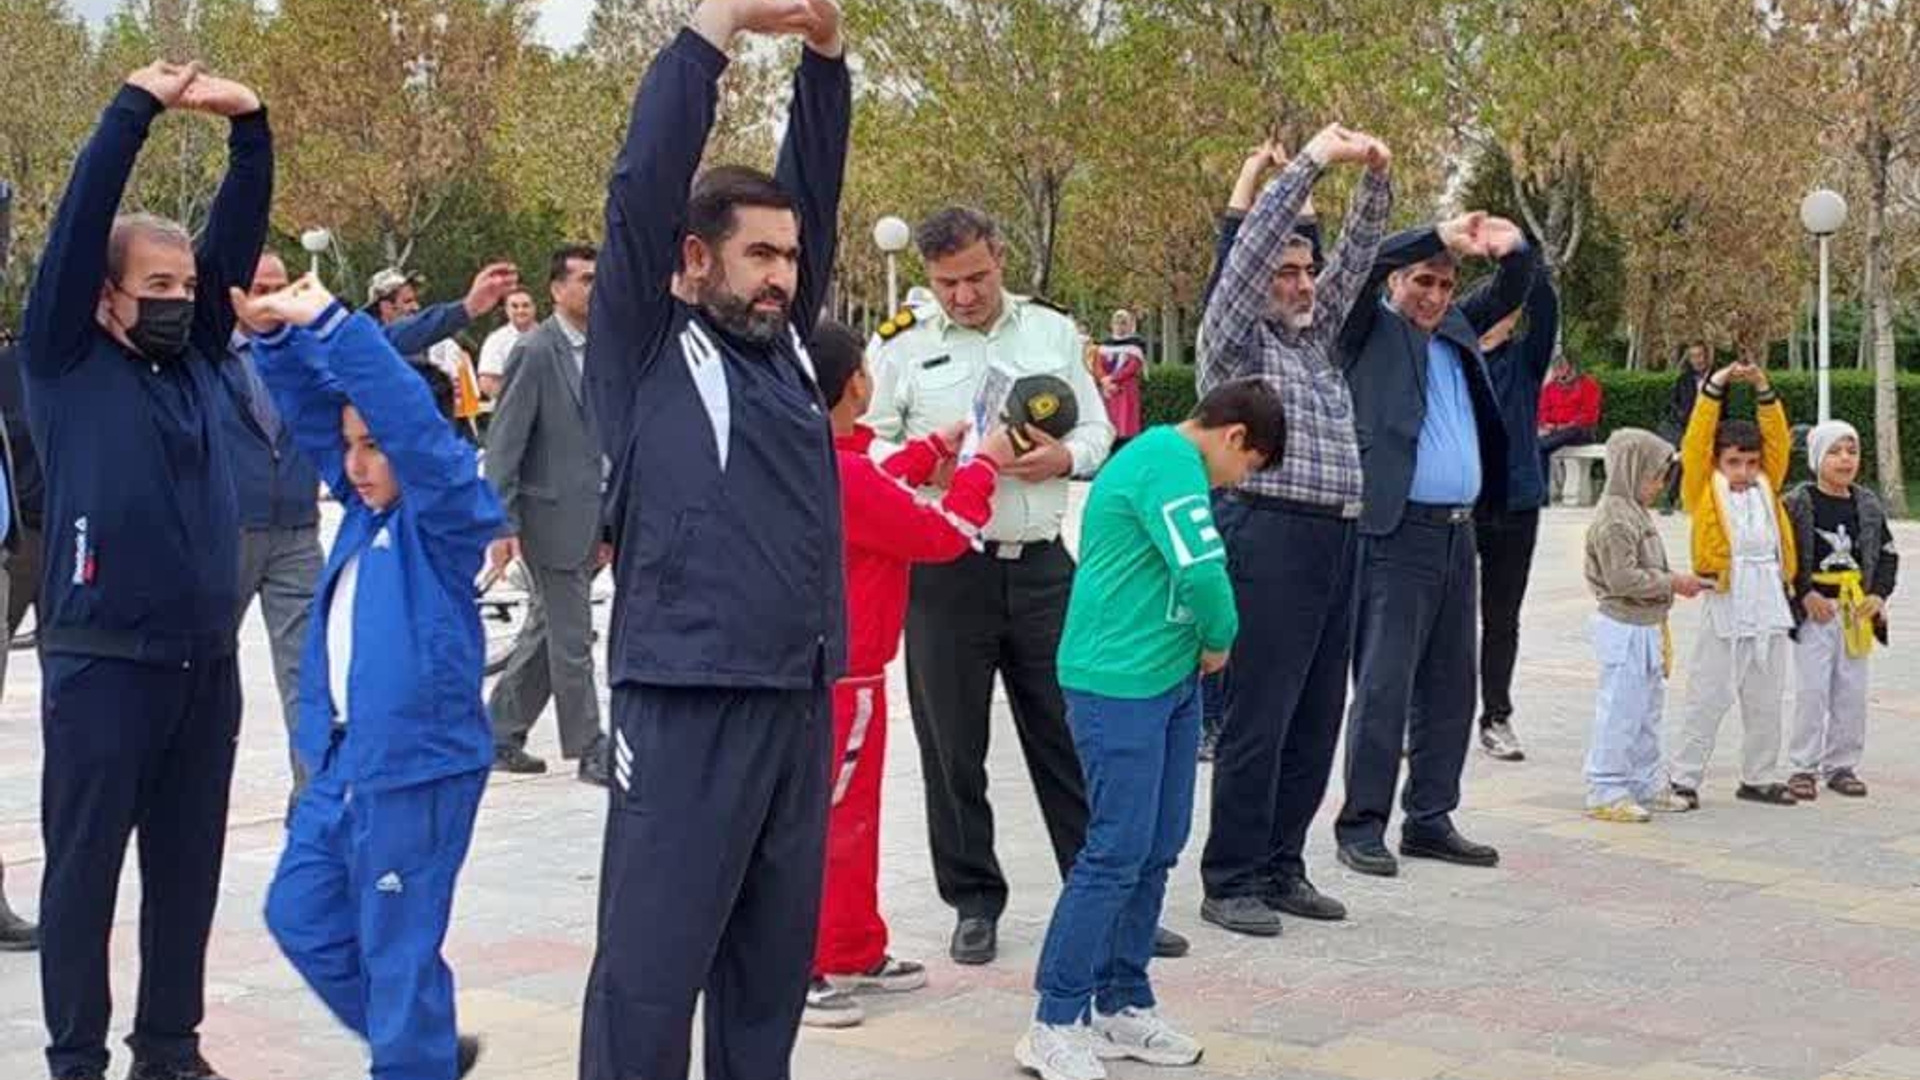 به مناسبت هفته سلامت همایش پیاده روی خانوادگی عصر گاهی و جشنواره فرهنگی ورزشی در شهر فرمهین